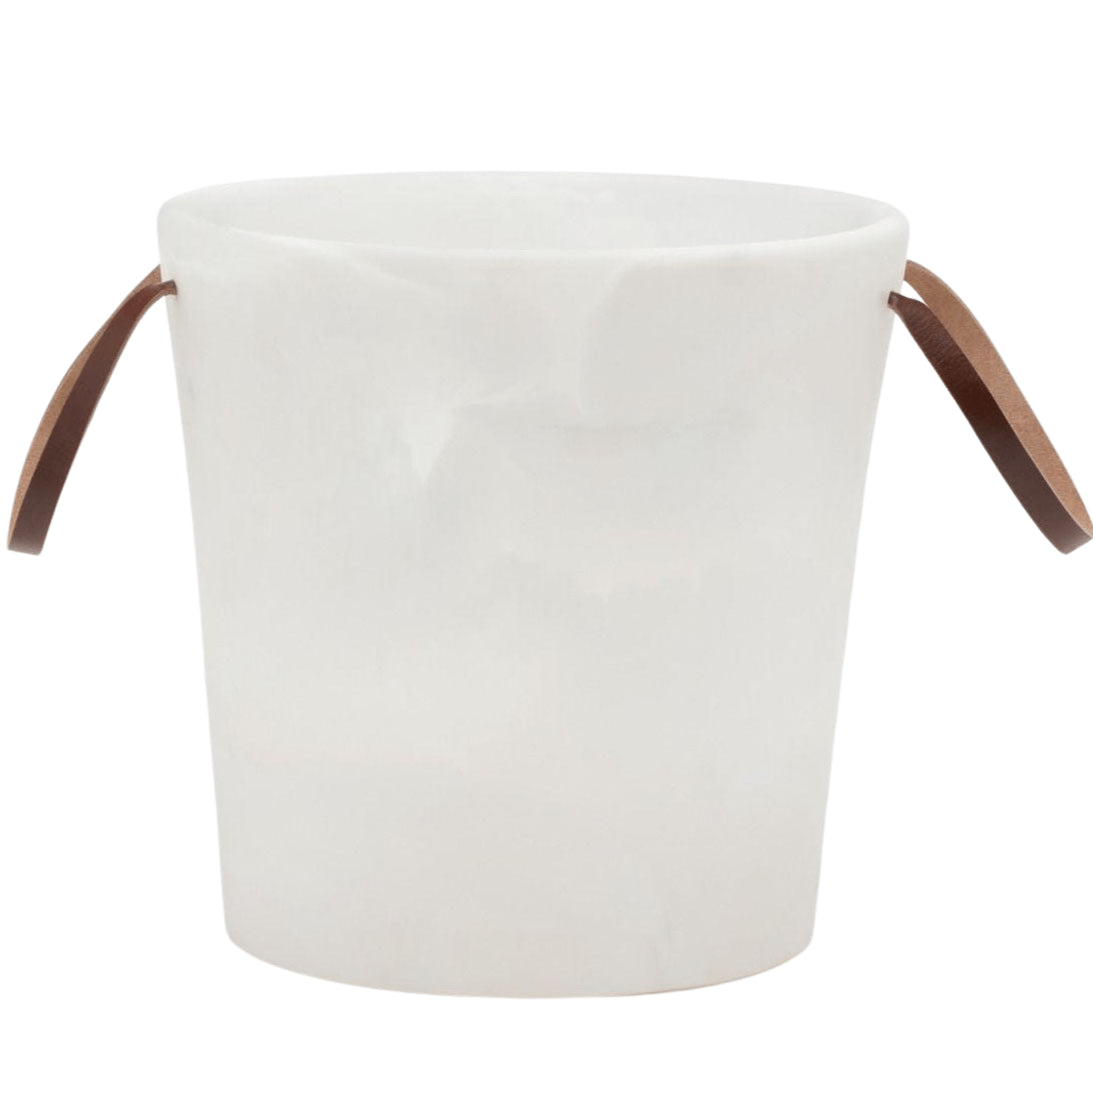 Pedra Ceramic Ice Bucket + Reviews